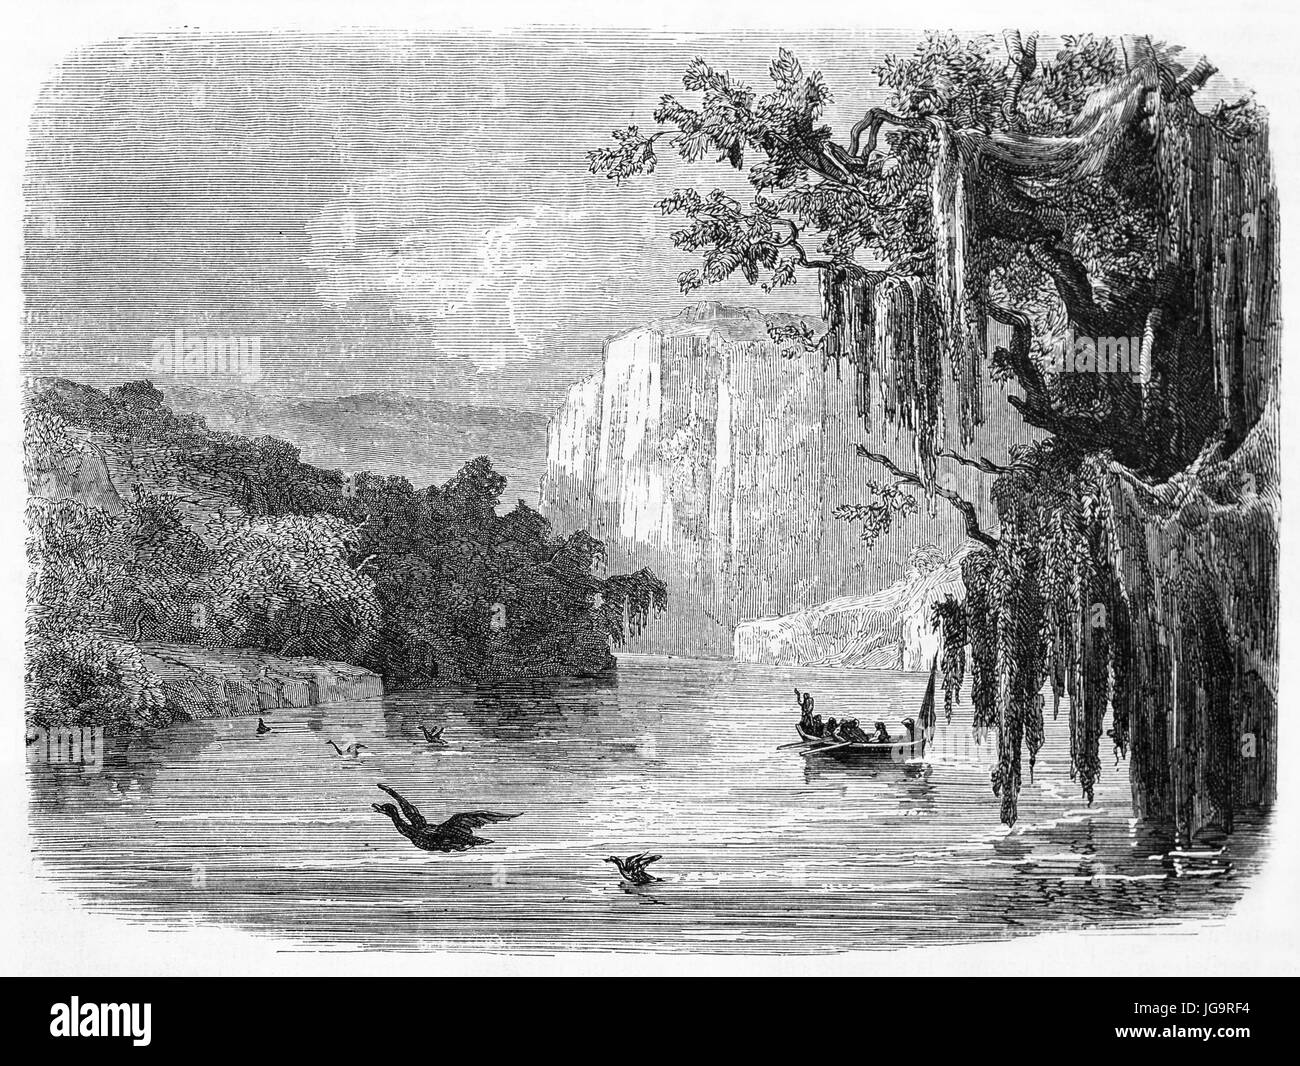 Vue ancienne de la rivière Glenelg, état de Victoria, Australie. Créé par Francais et Pannemaker après Mitchell, publié sur le Tour du Monde, Paris, 1861 Banque D'Images